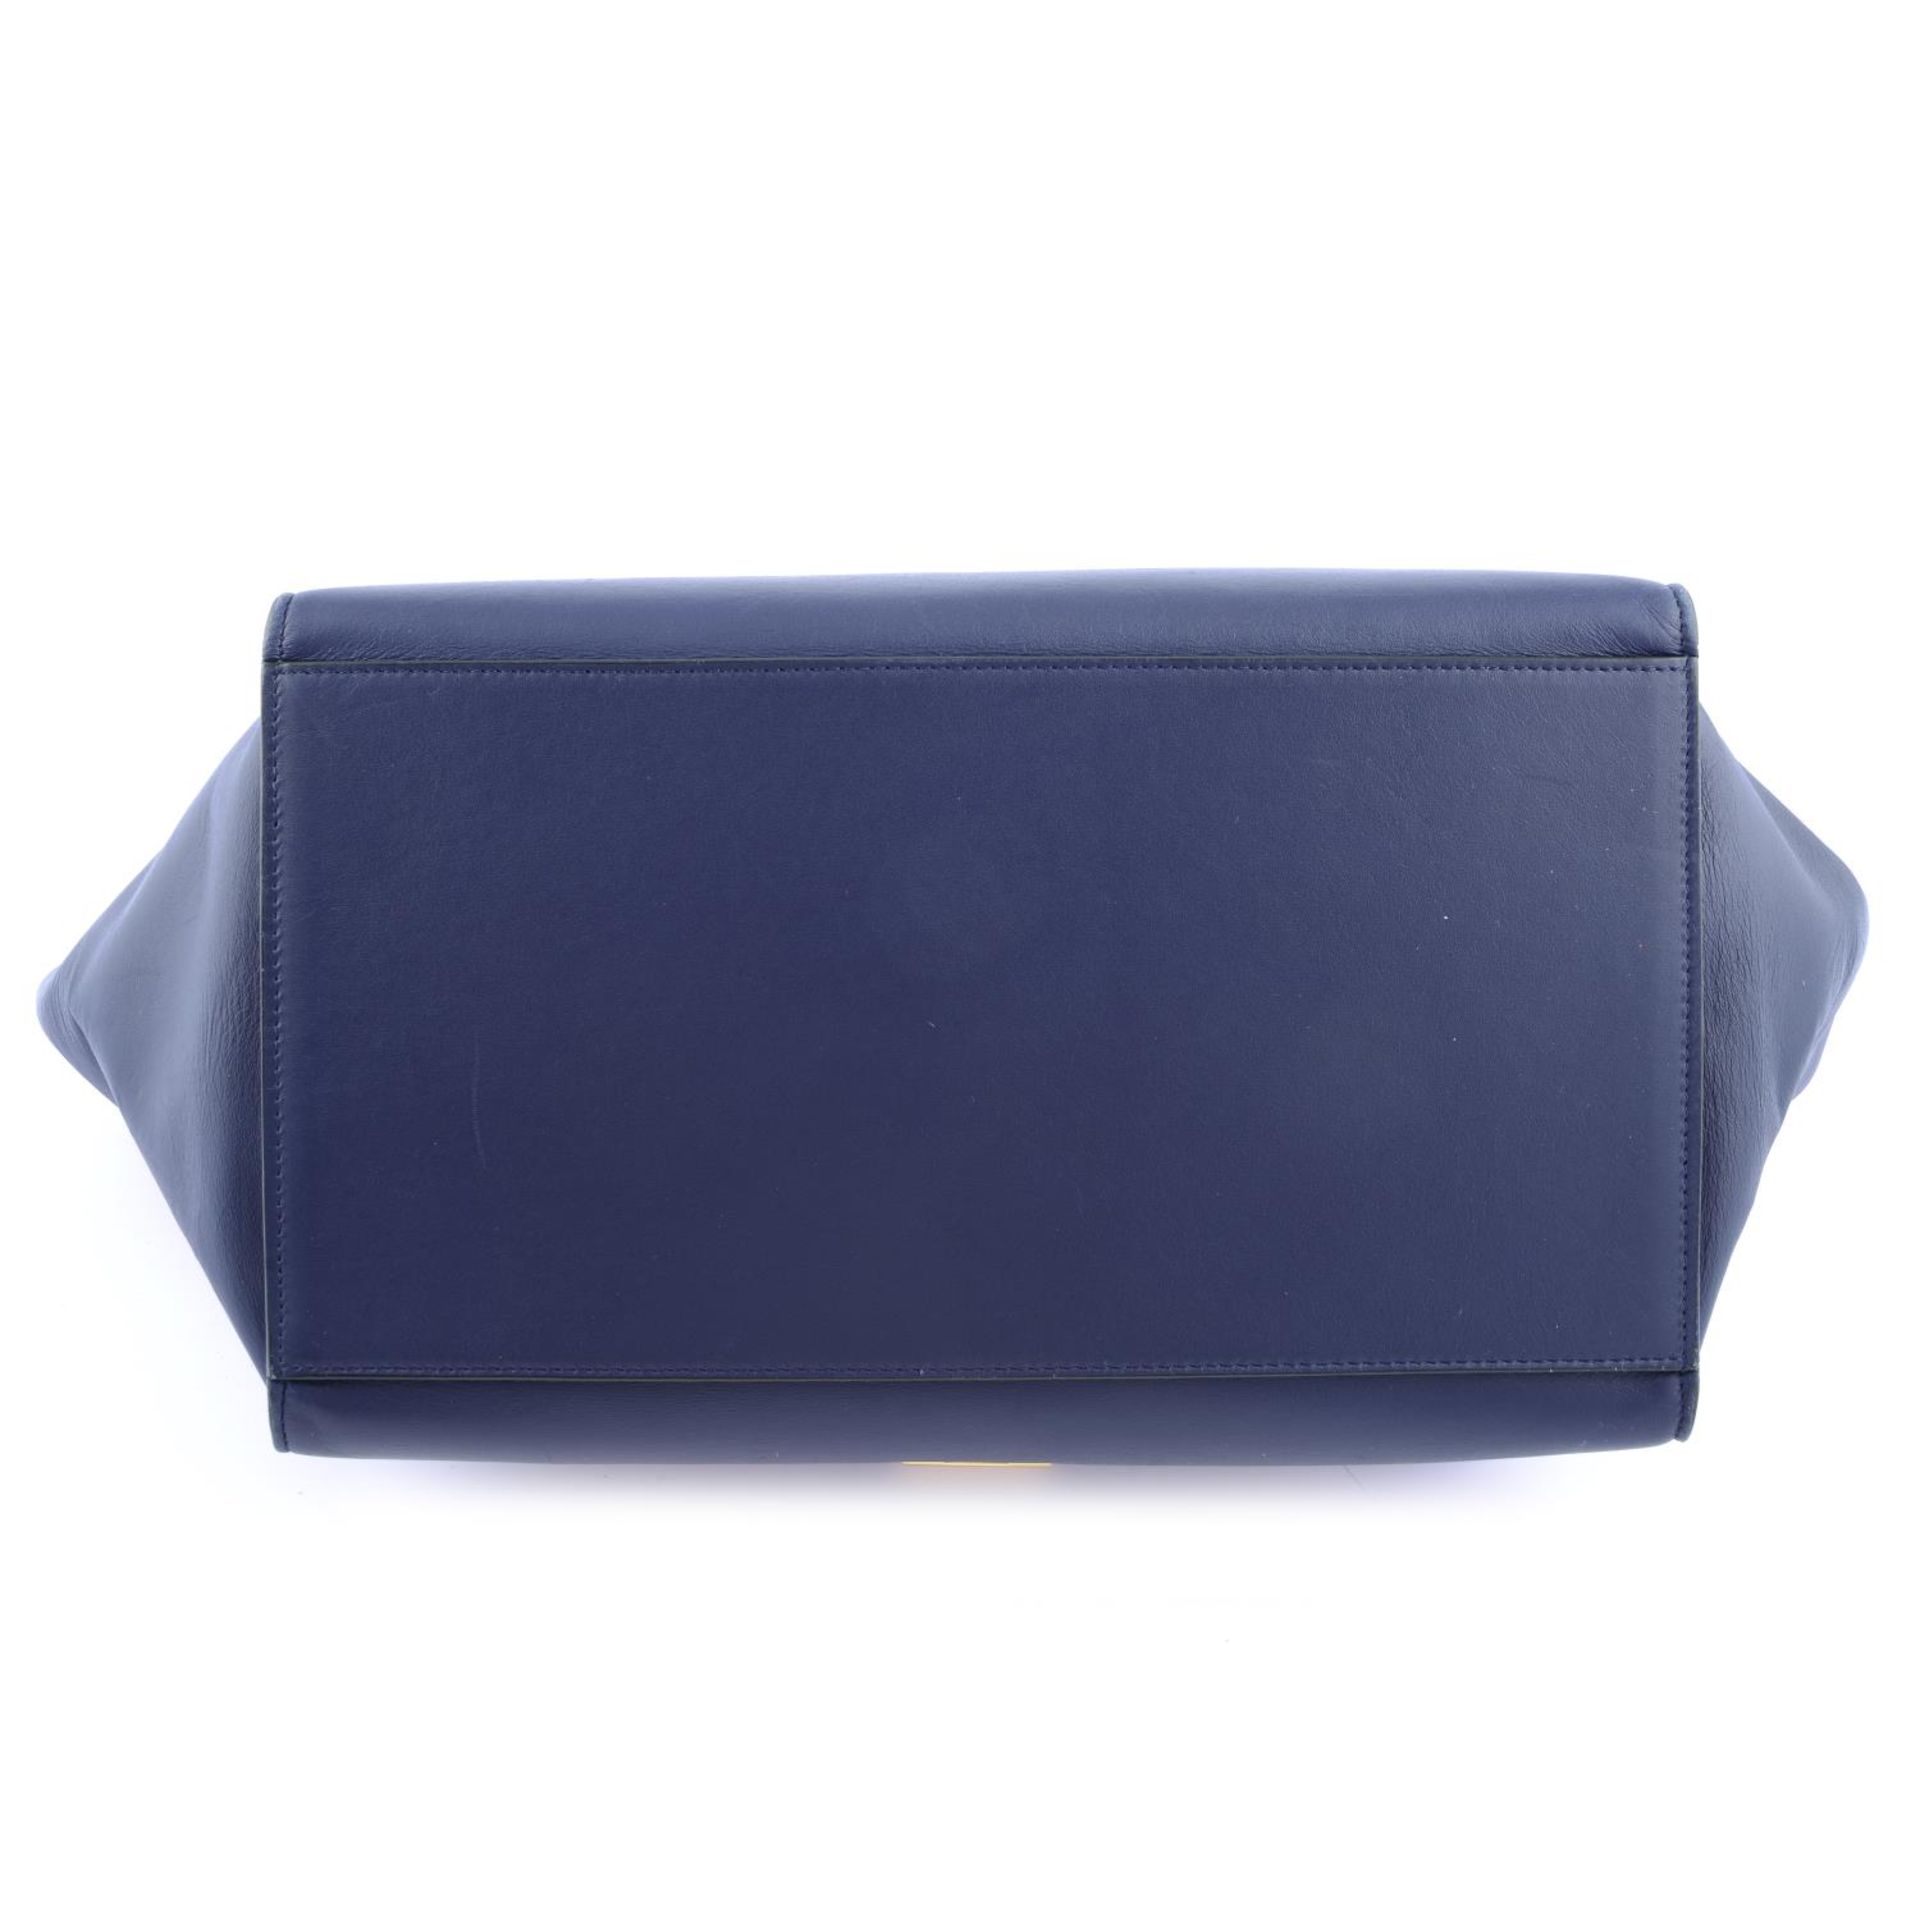 CÉLINE - a blue leather Trapeze handbag. - Image 4 of 4